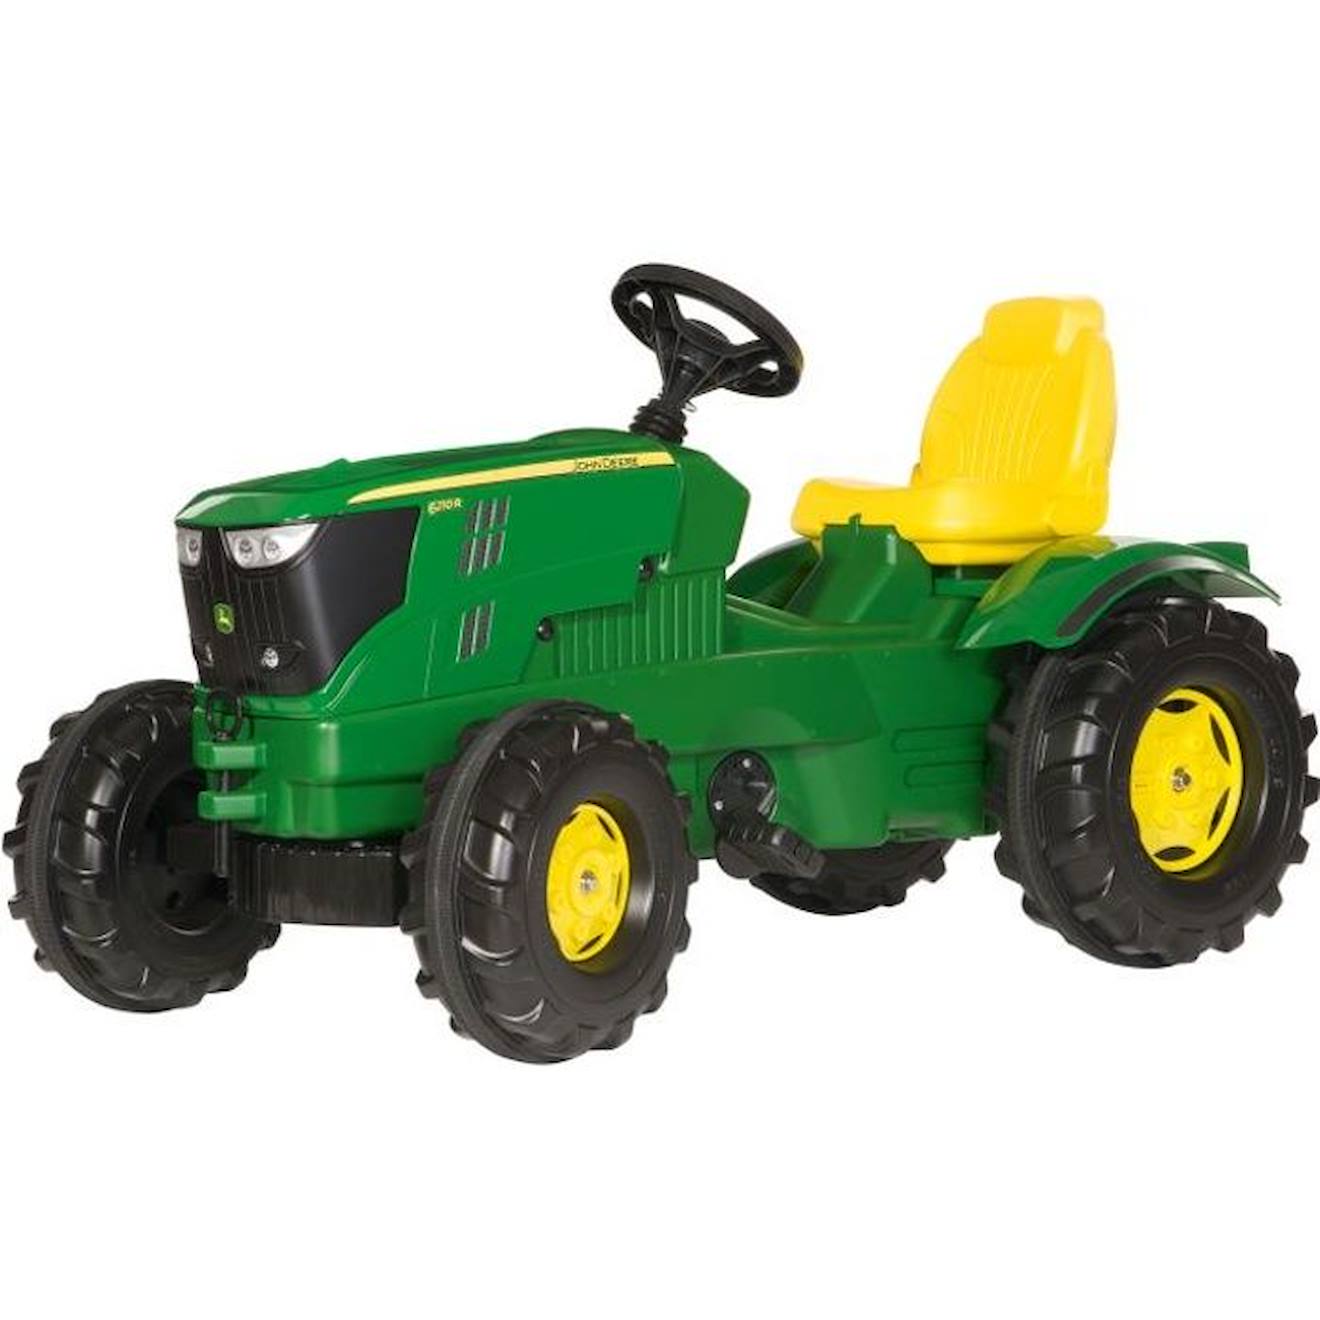 Tracteur À Pédales John Deere 6210r Rolly Farmtrac Pour Enfant De 3 Ans Et Plus - Vert Et Rouge Vert